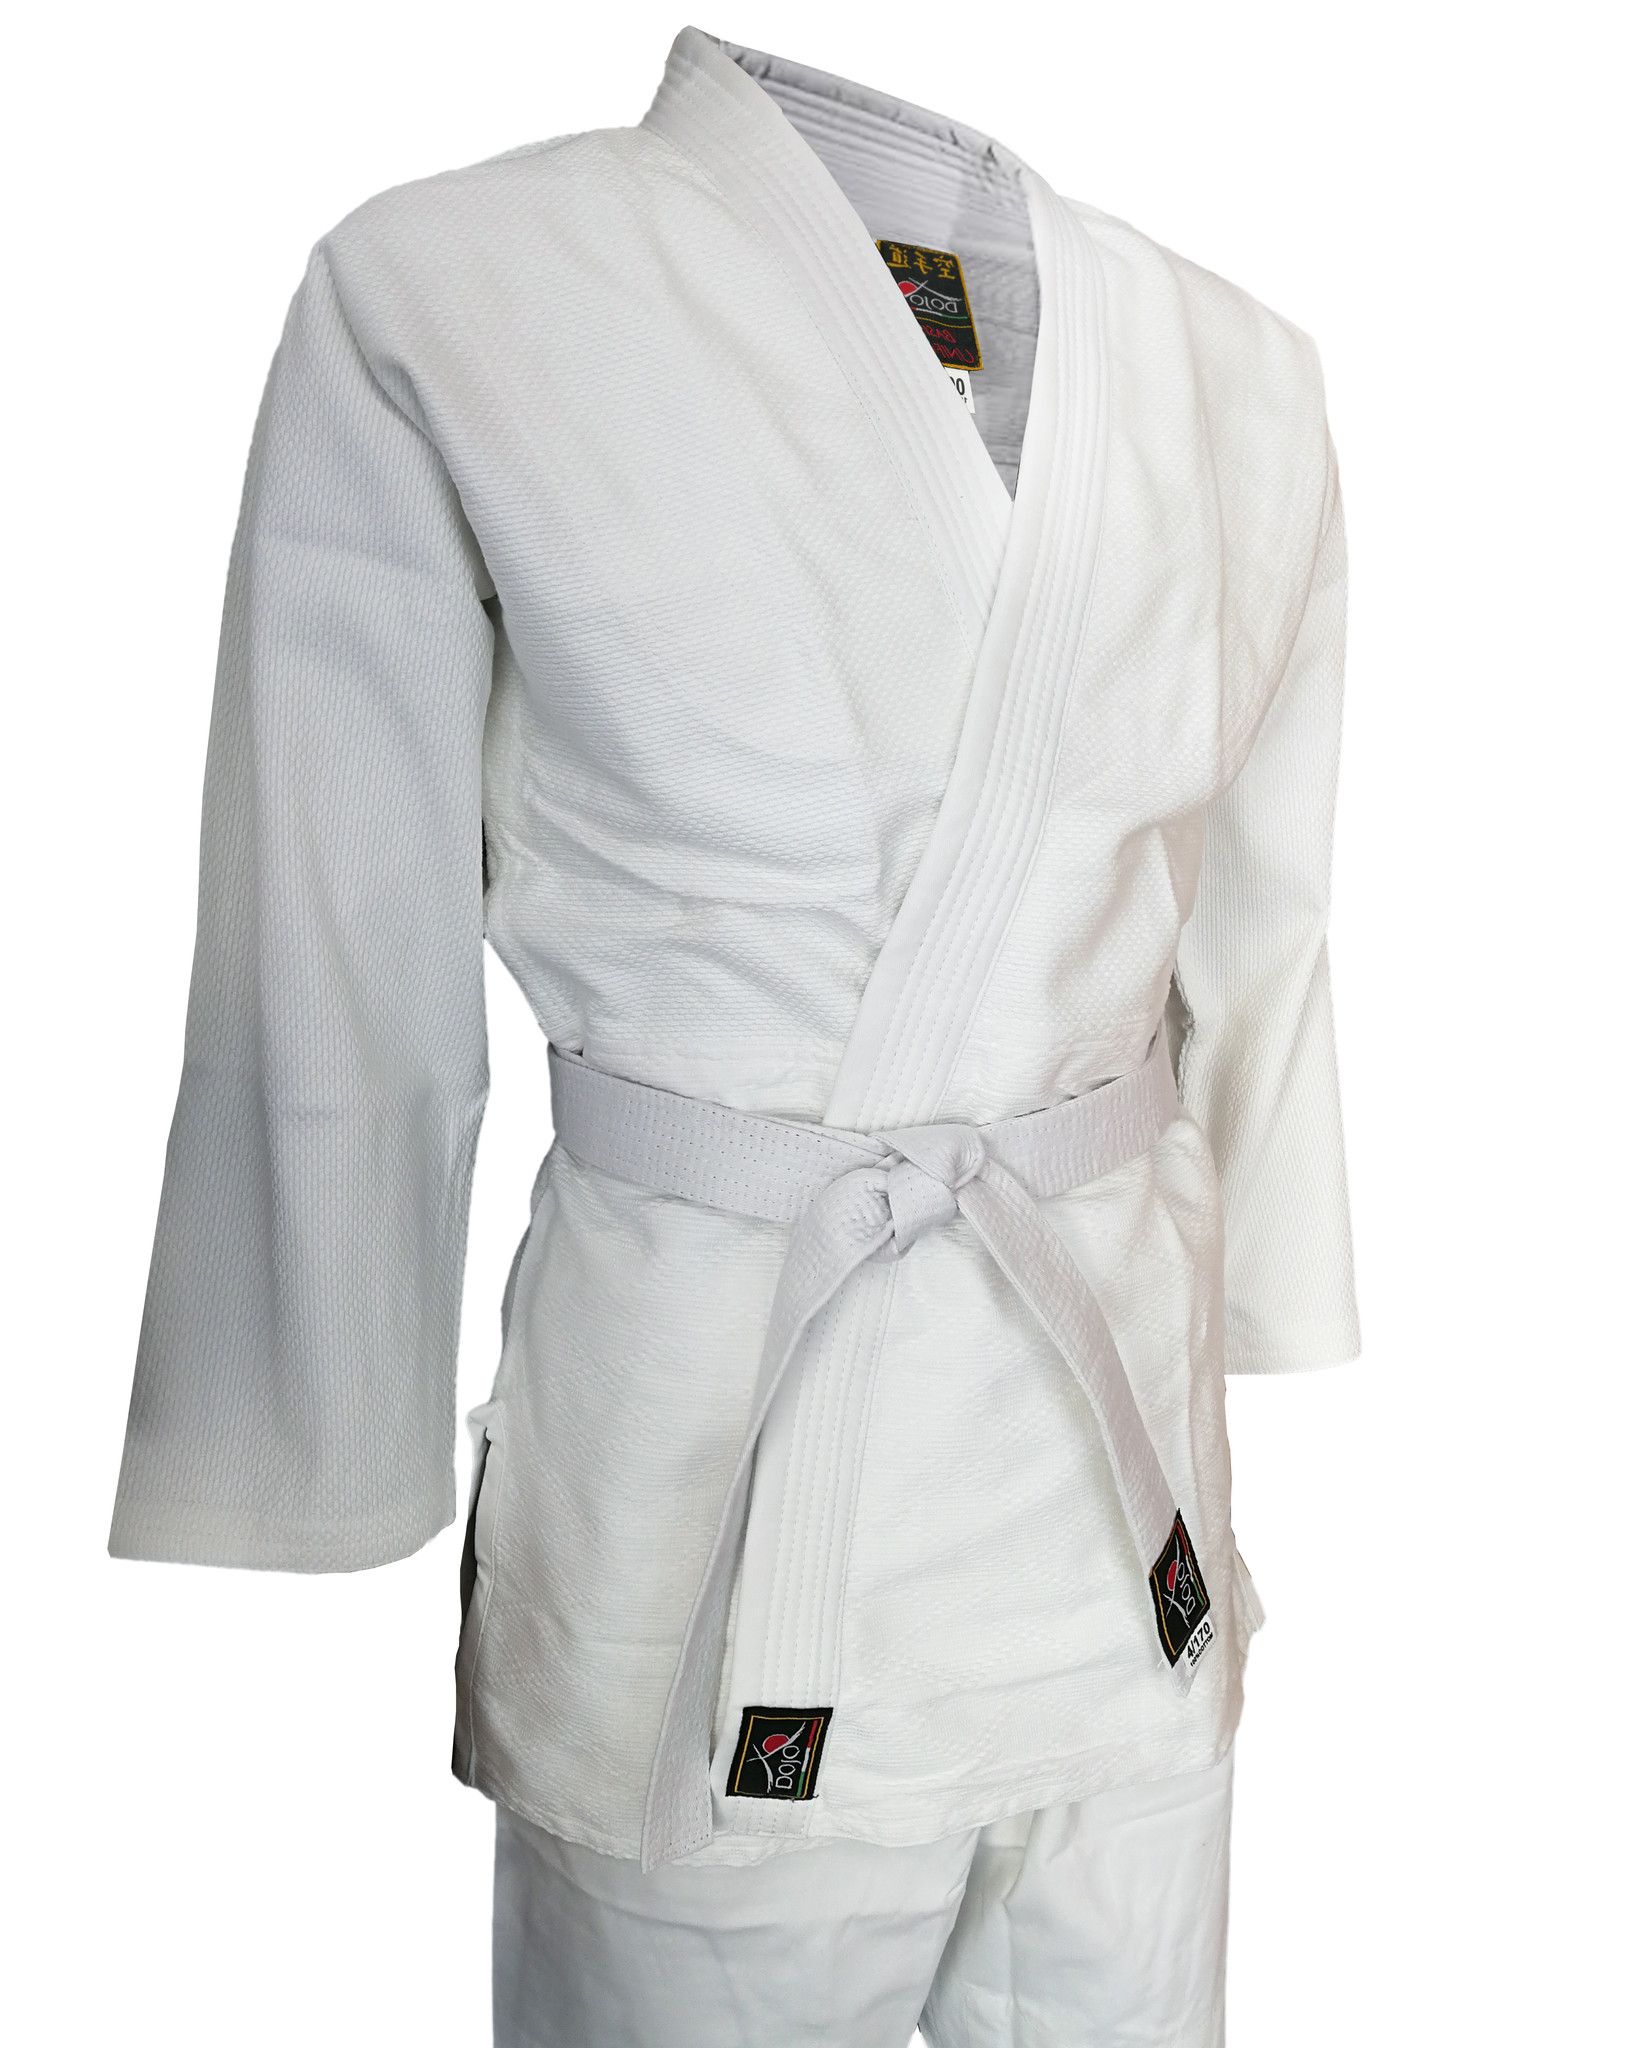 Judogi Dojo Training per allenamento uniforme per Judo adatto a bambini o adulti